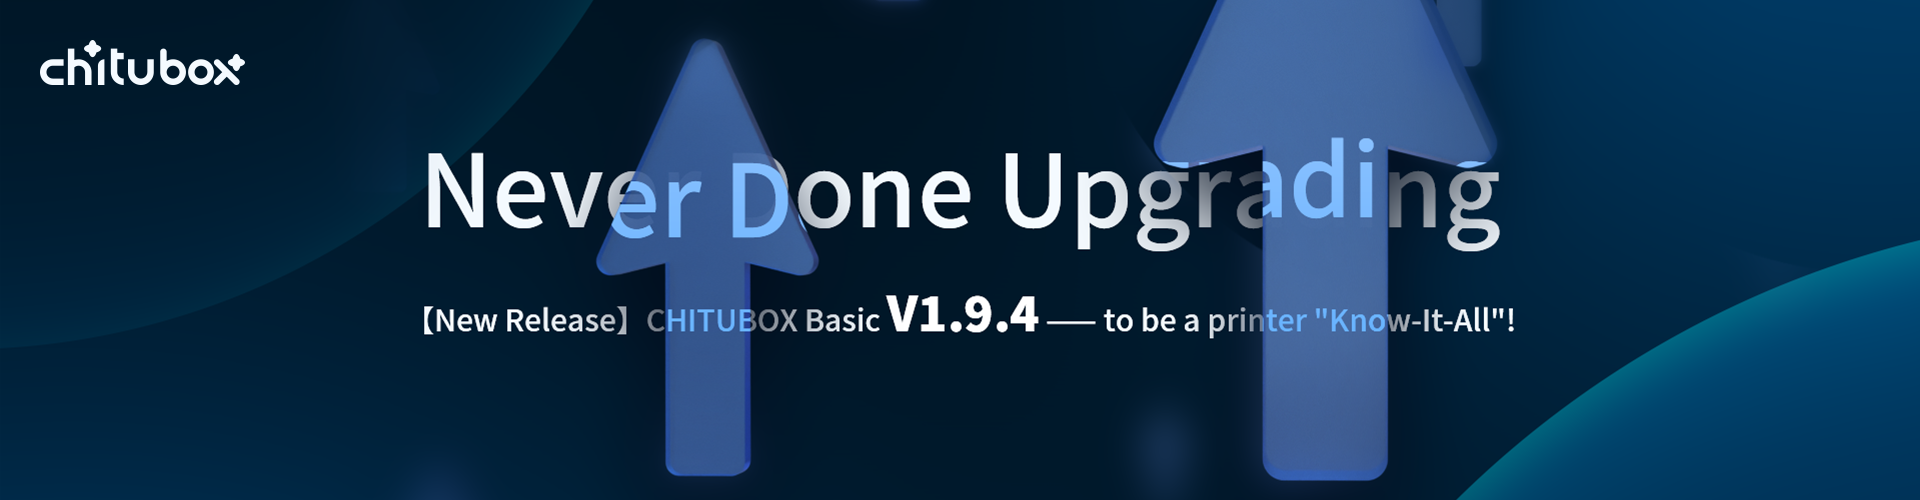 CHITUBOX Basic V1.9.4poster